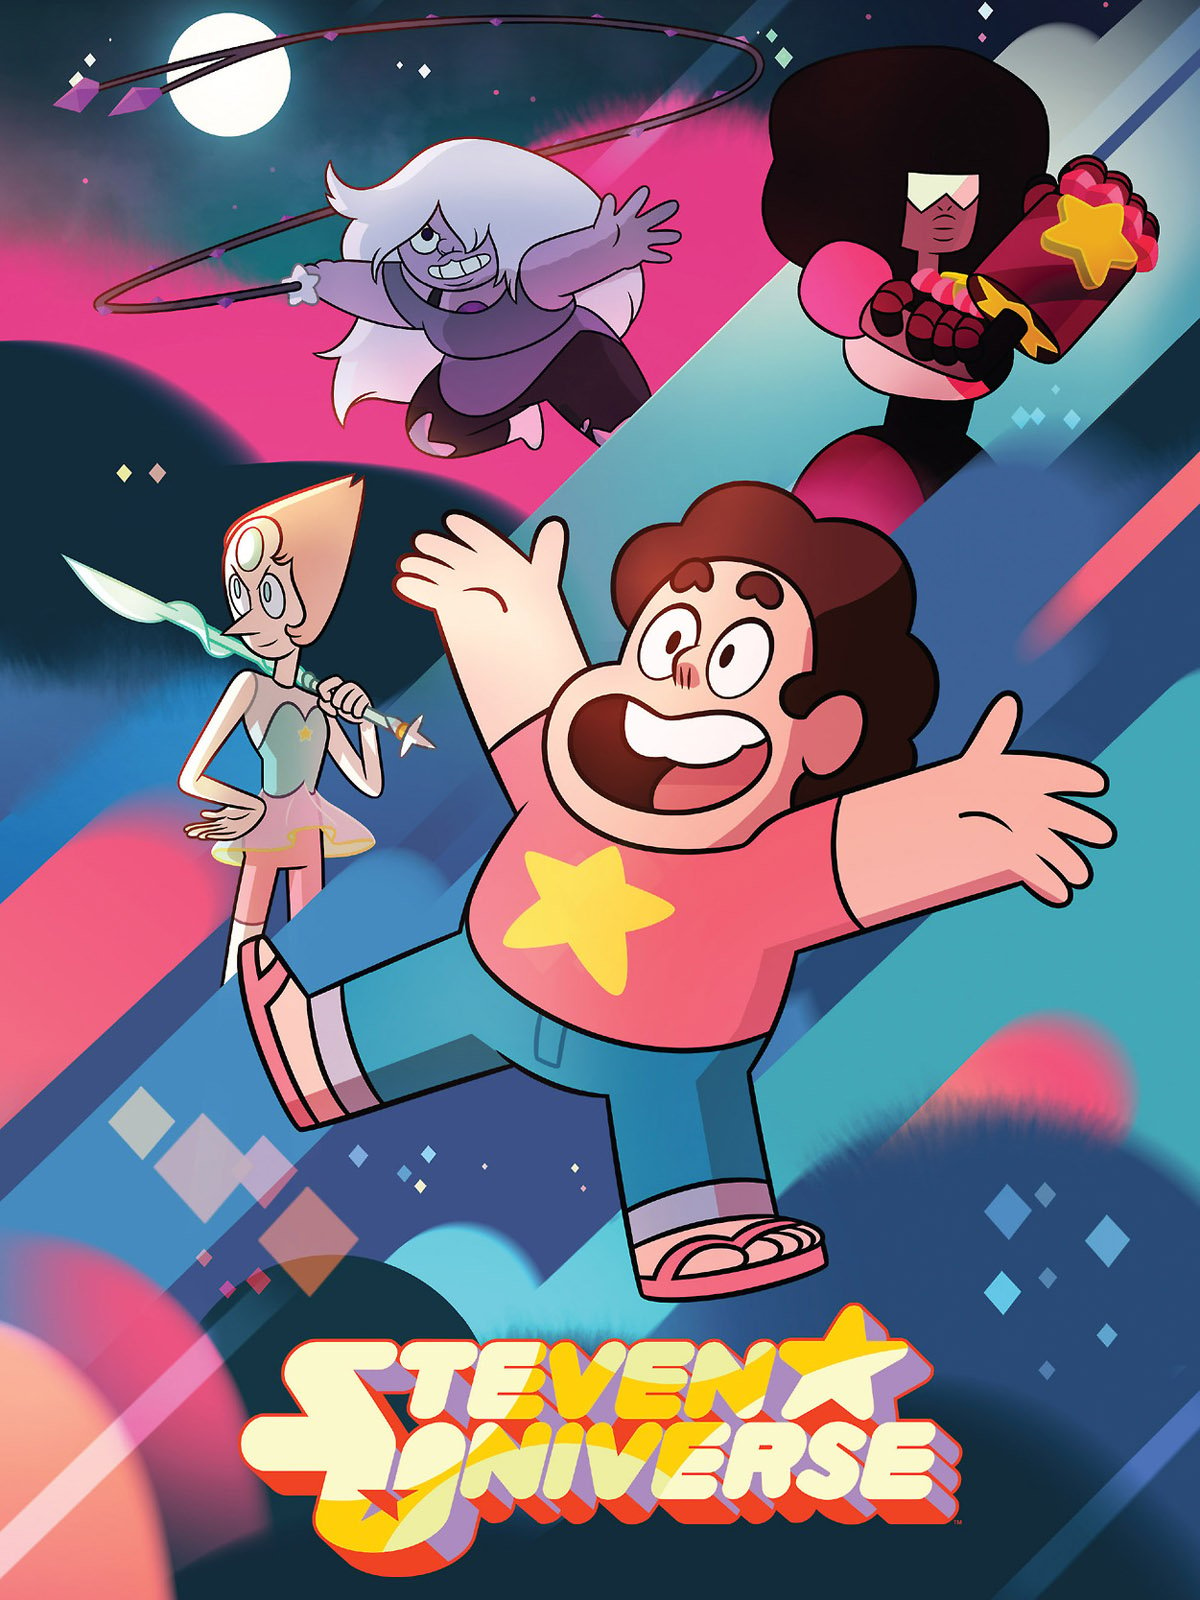 Steven Universo Futuro” chega ao fim com programação especial no